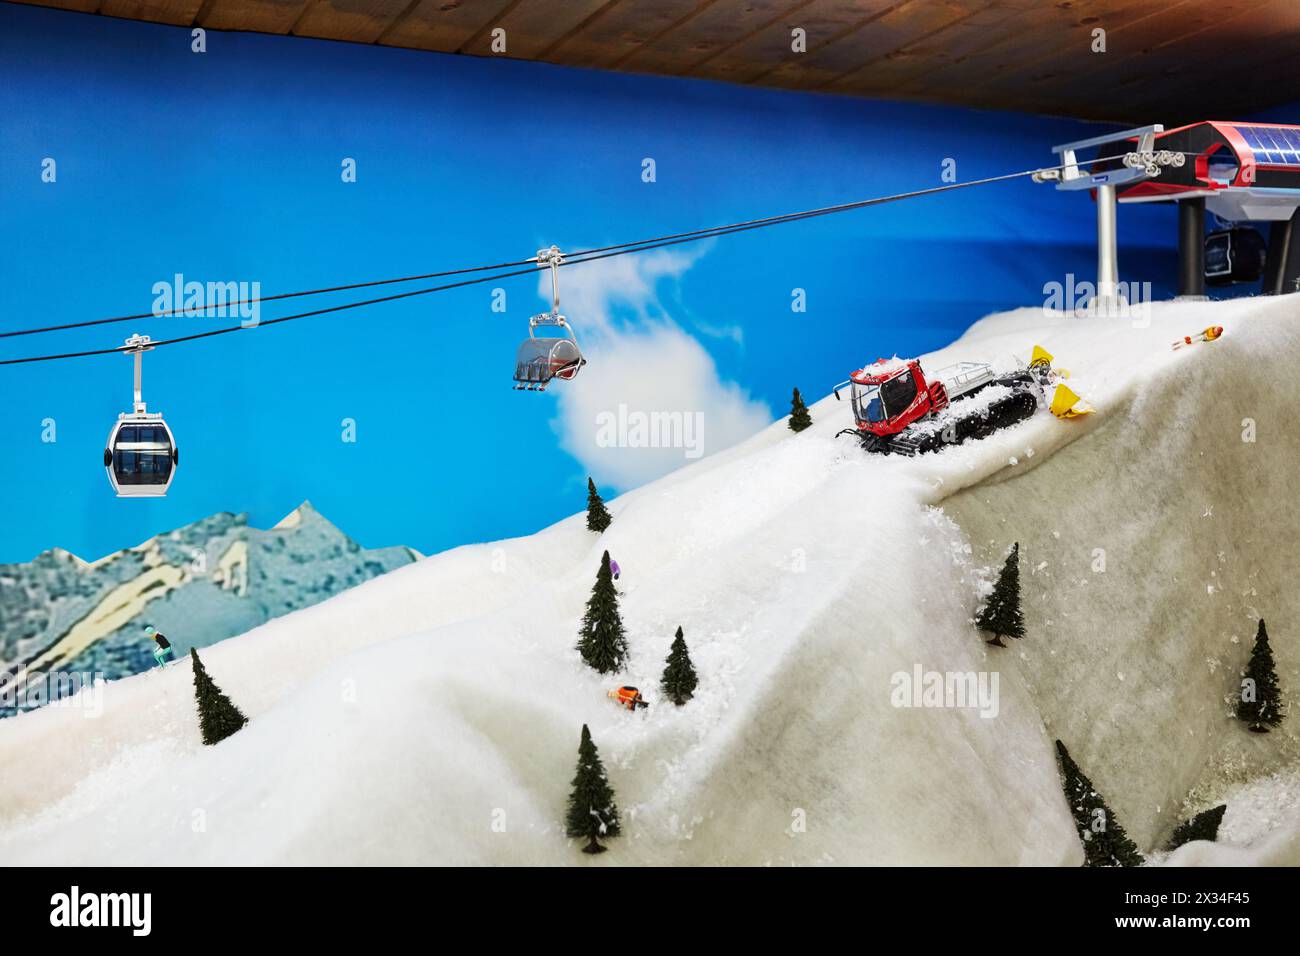 MOSCOU, RUSSIE - DEC 28, 2014 : modèle de travail de téléphérique dans la piste de ski Stepanovo. Le complexe sportif Stepanovo est situé à 50 km de Moscou. Banque D'Images